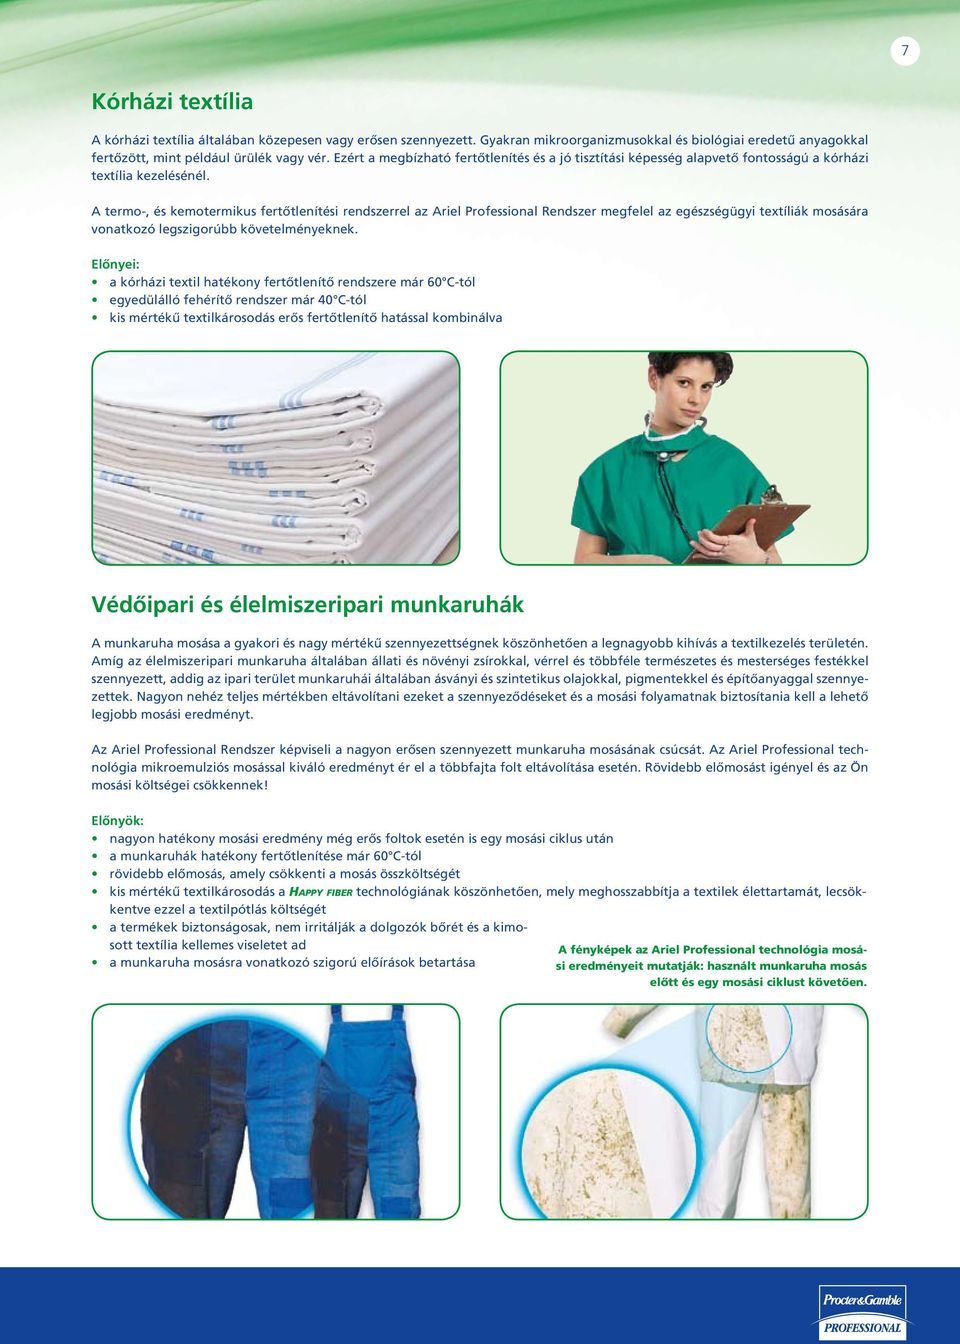 A termo-, és kemotermikus fertőtlenítési rendszerrel az Ariel Professional Rendszer megfelel az egészségügyi textíliák mosására vonatkozó legszigorúbb követelményeknek.